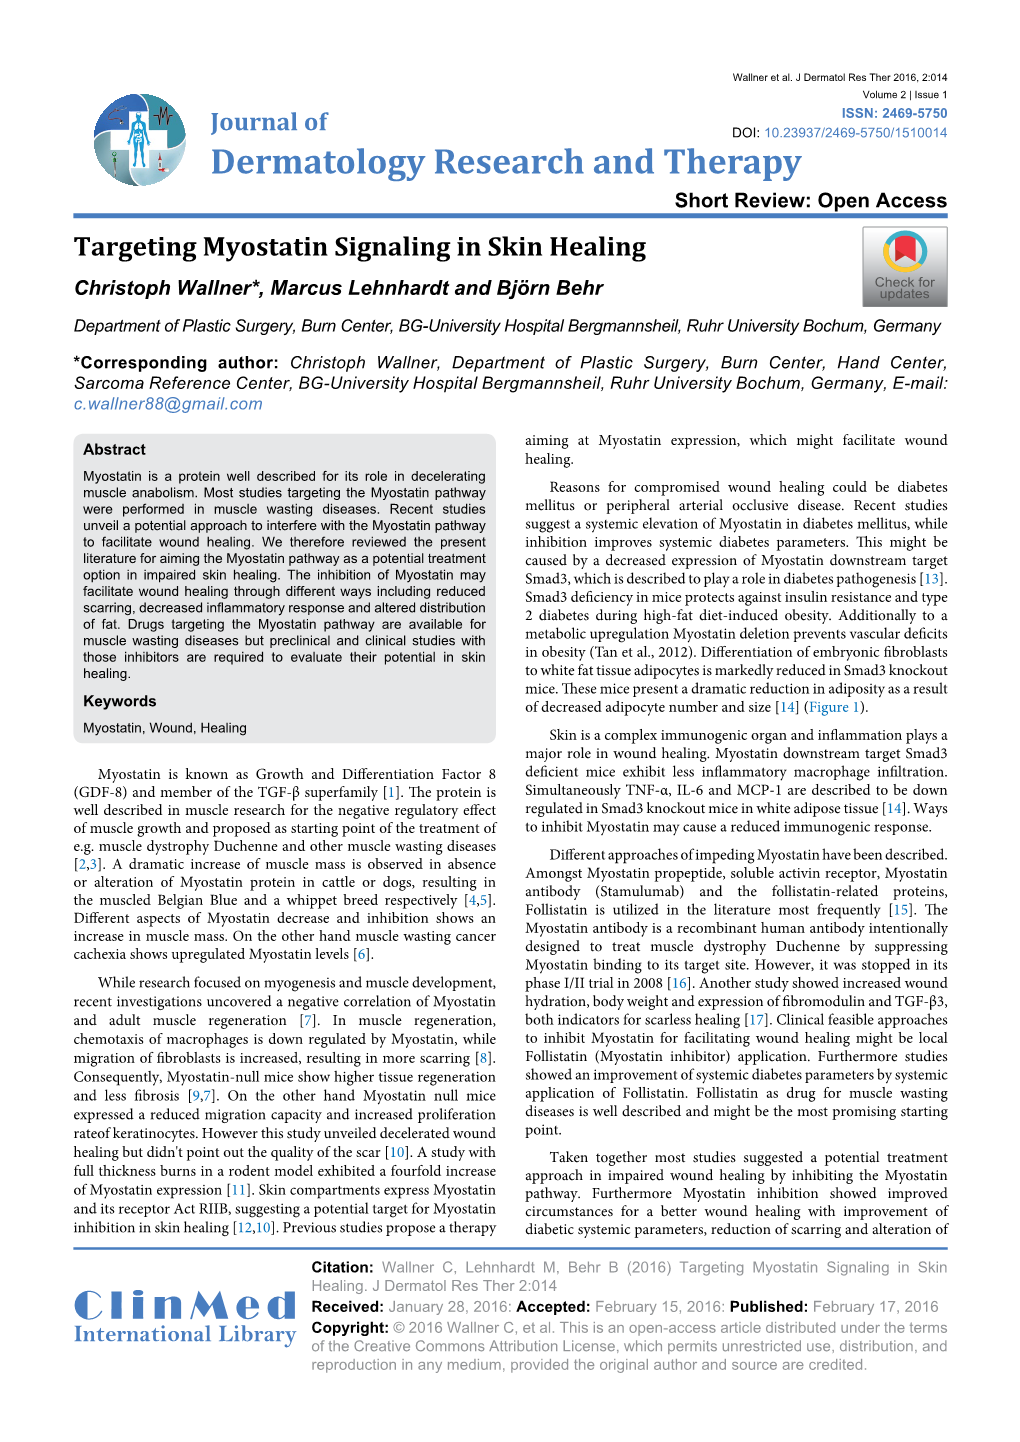 Targeting Myostatin Signaling in Skin Healing